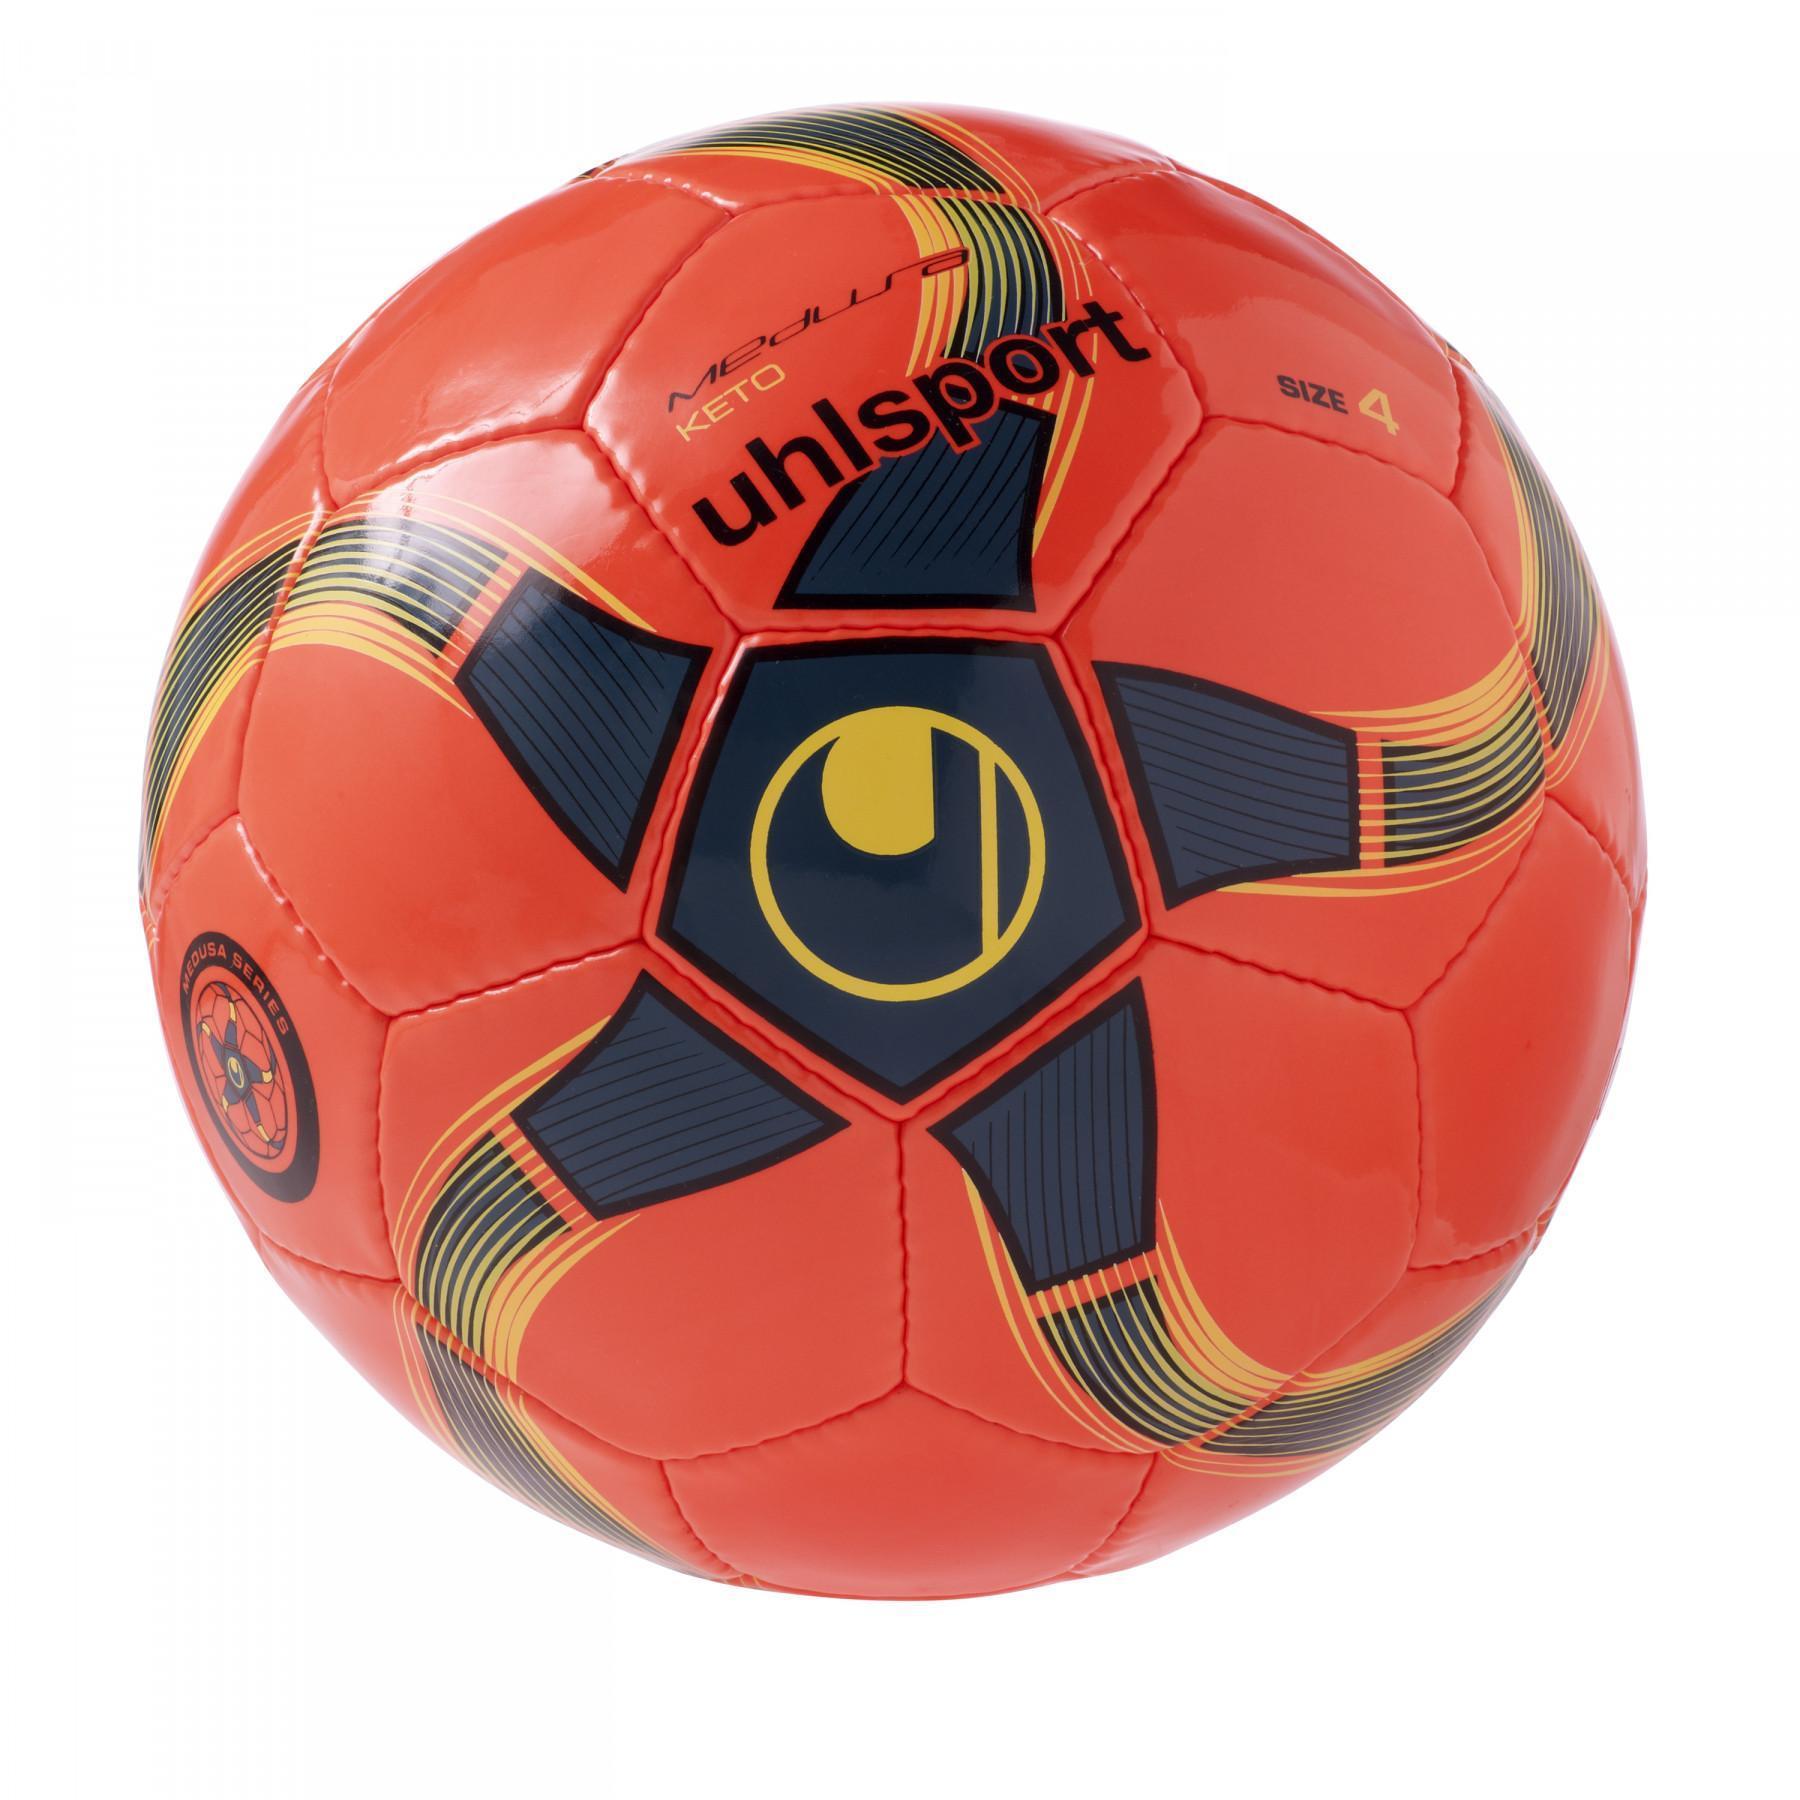 Ballon Futsal Uhlsport Medusa Keto Taille 4